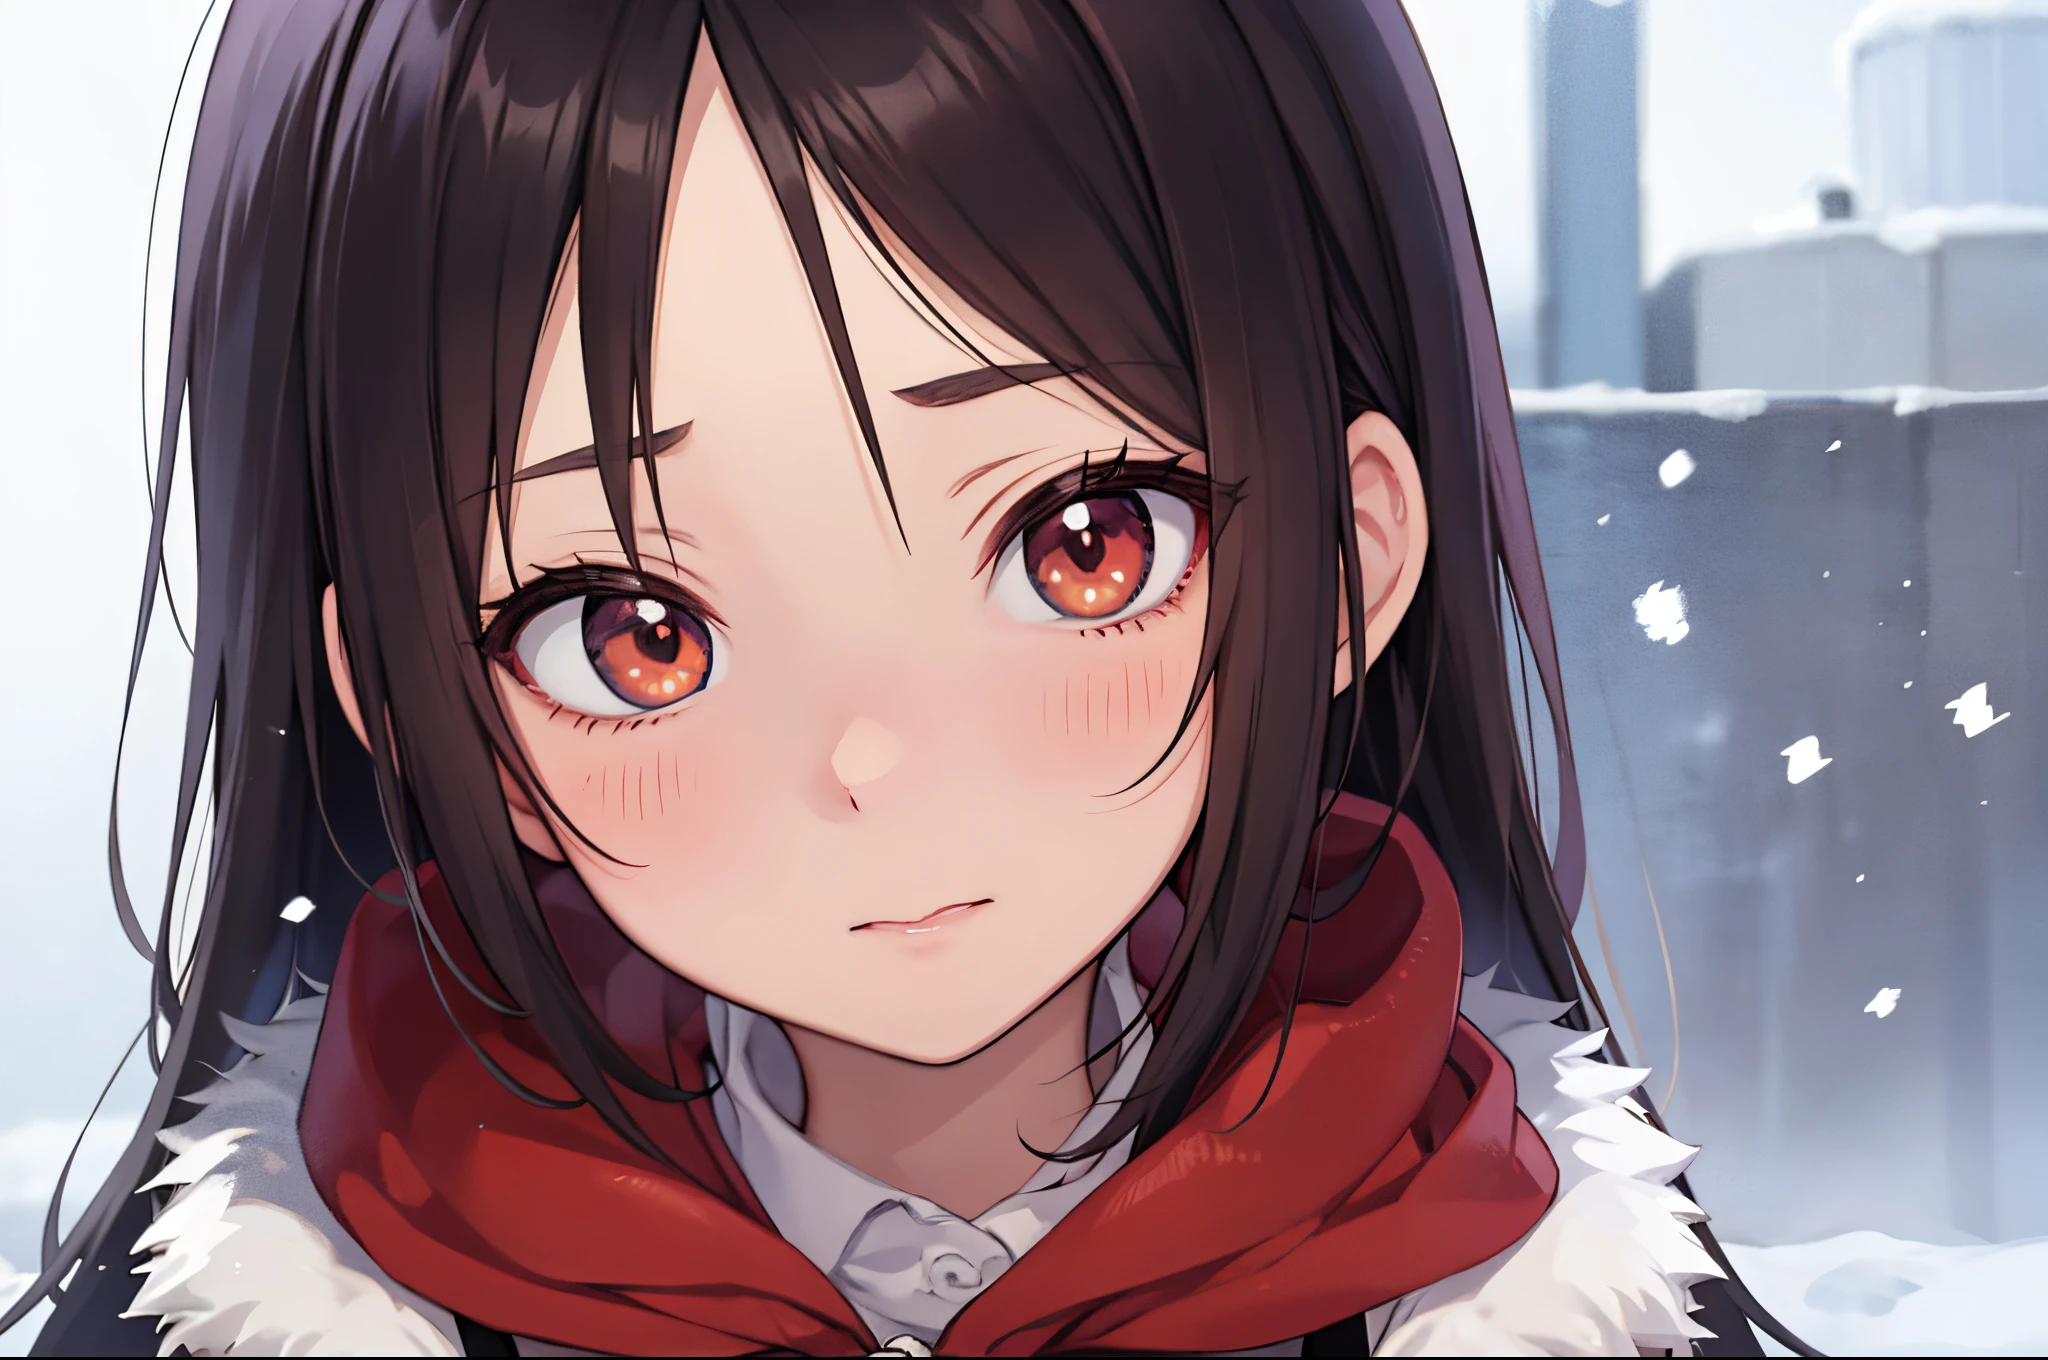 Аниме стиль, 1 девочка, зима, теплая одежда, красные щеки, красный нос, идет снег, Фон: зима、экстремальный портрет крупным планом、Здоровое лицо